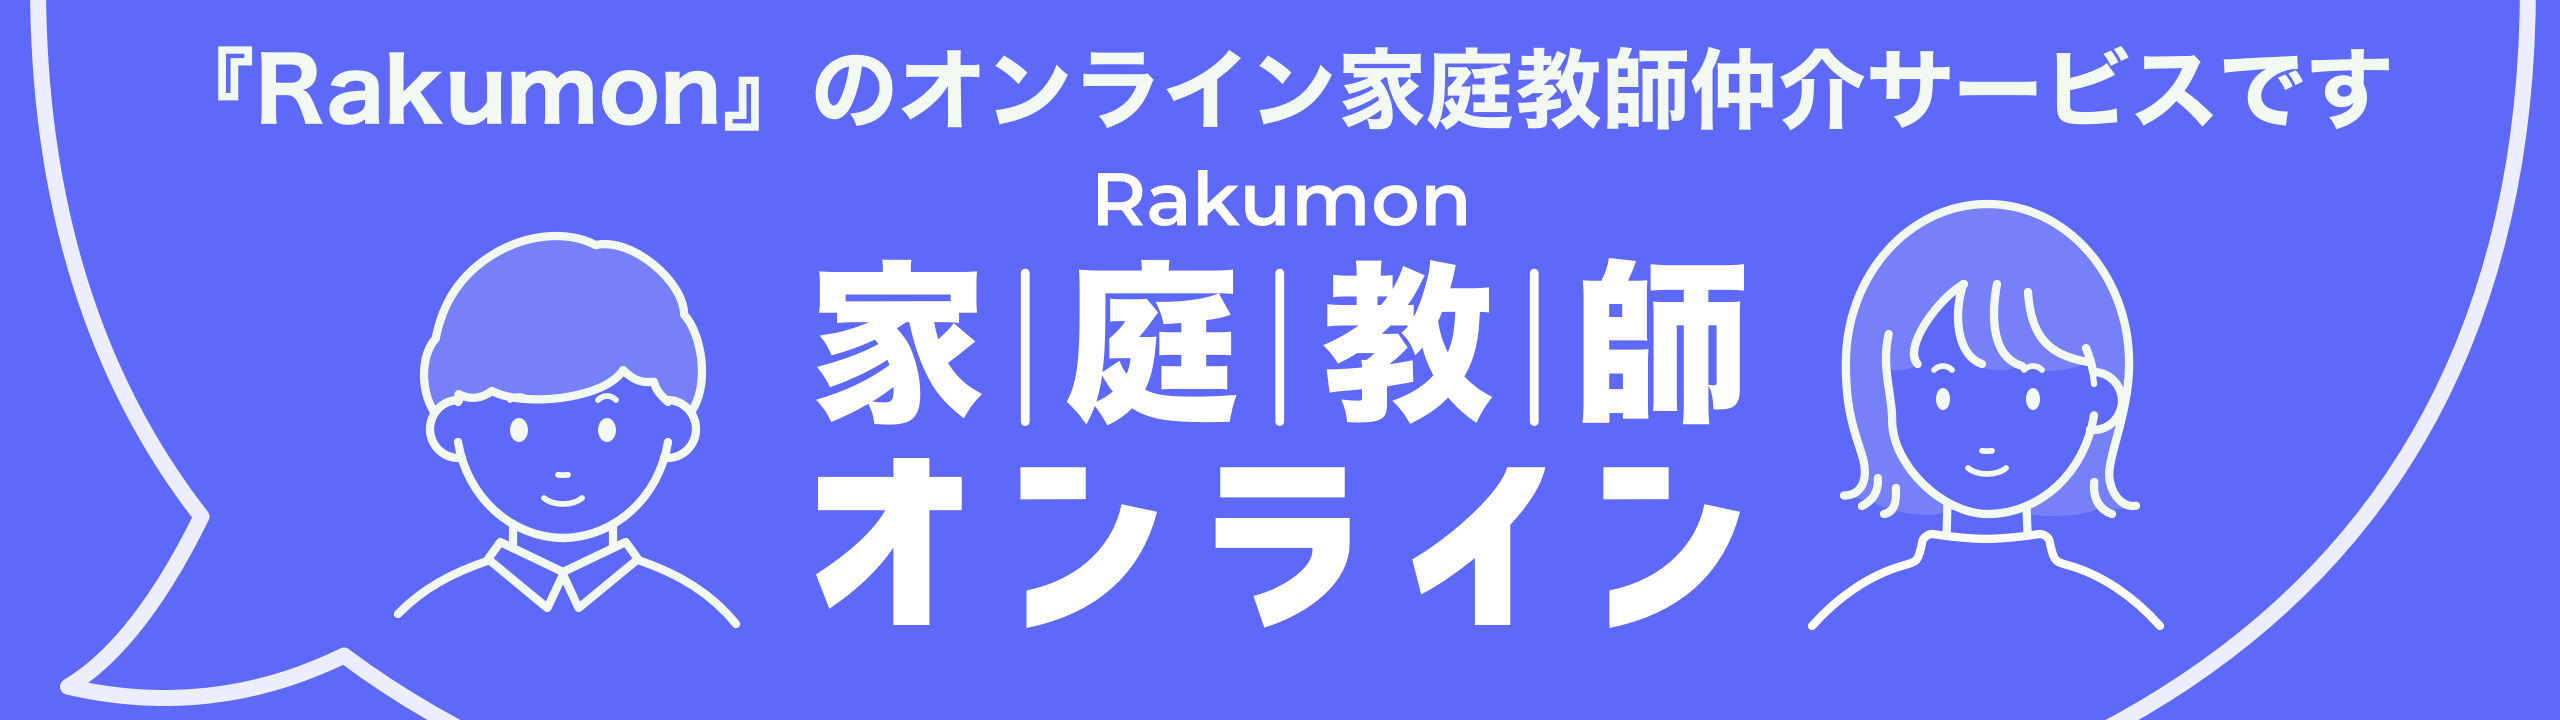 「Rakumon」のオンライン家庭教師仲介サービス 家庭教師オンライン